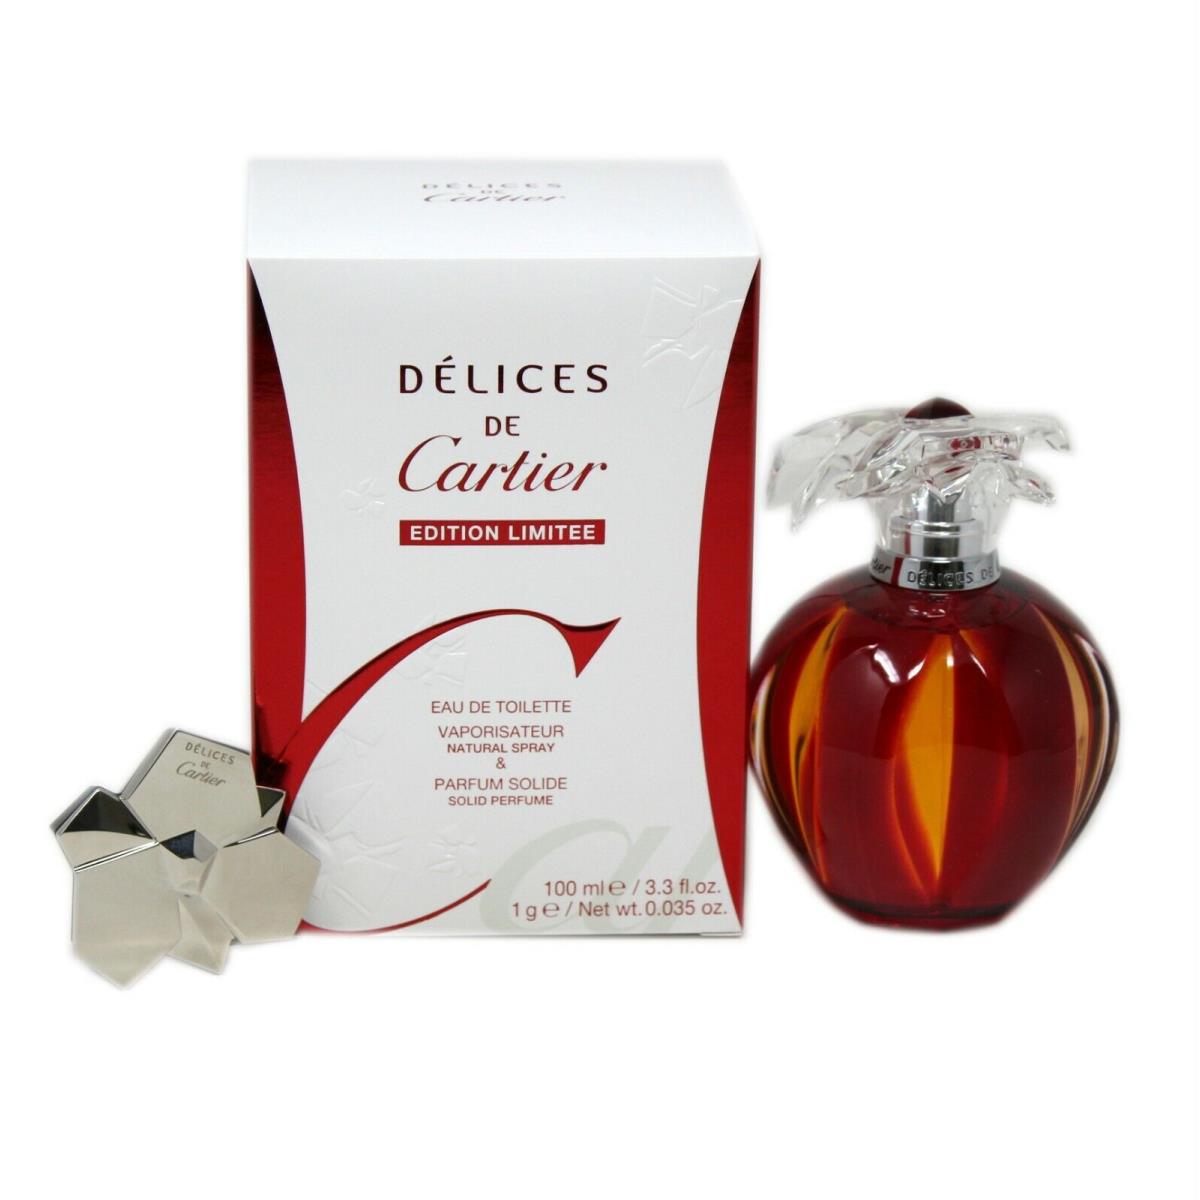 Delices DE Cartier Eau DE Toilette Spr 100ML Solid Perfume 1G Limited Edition